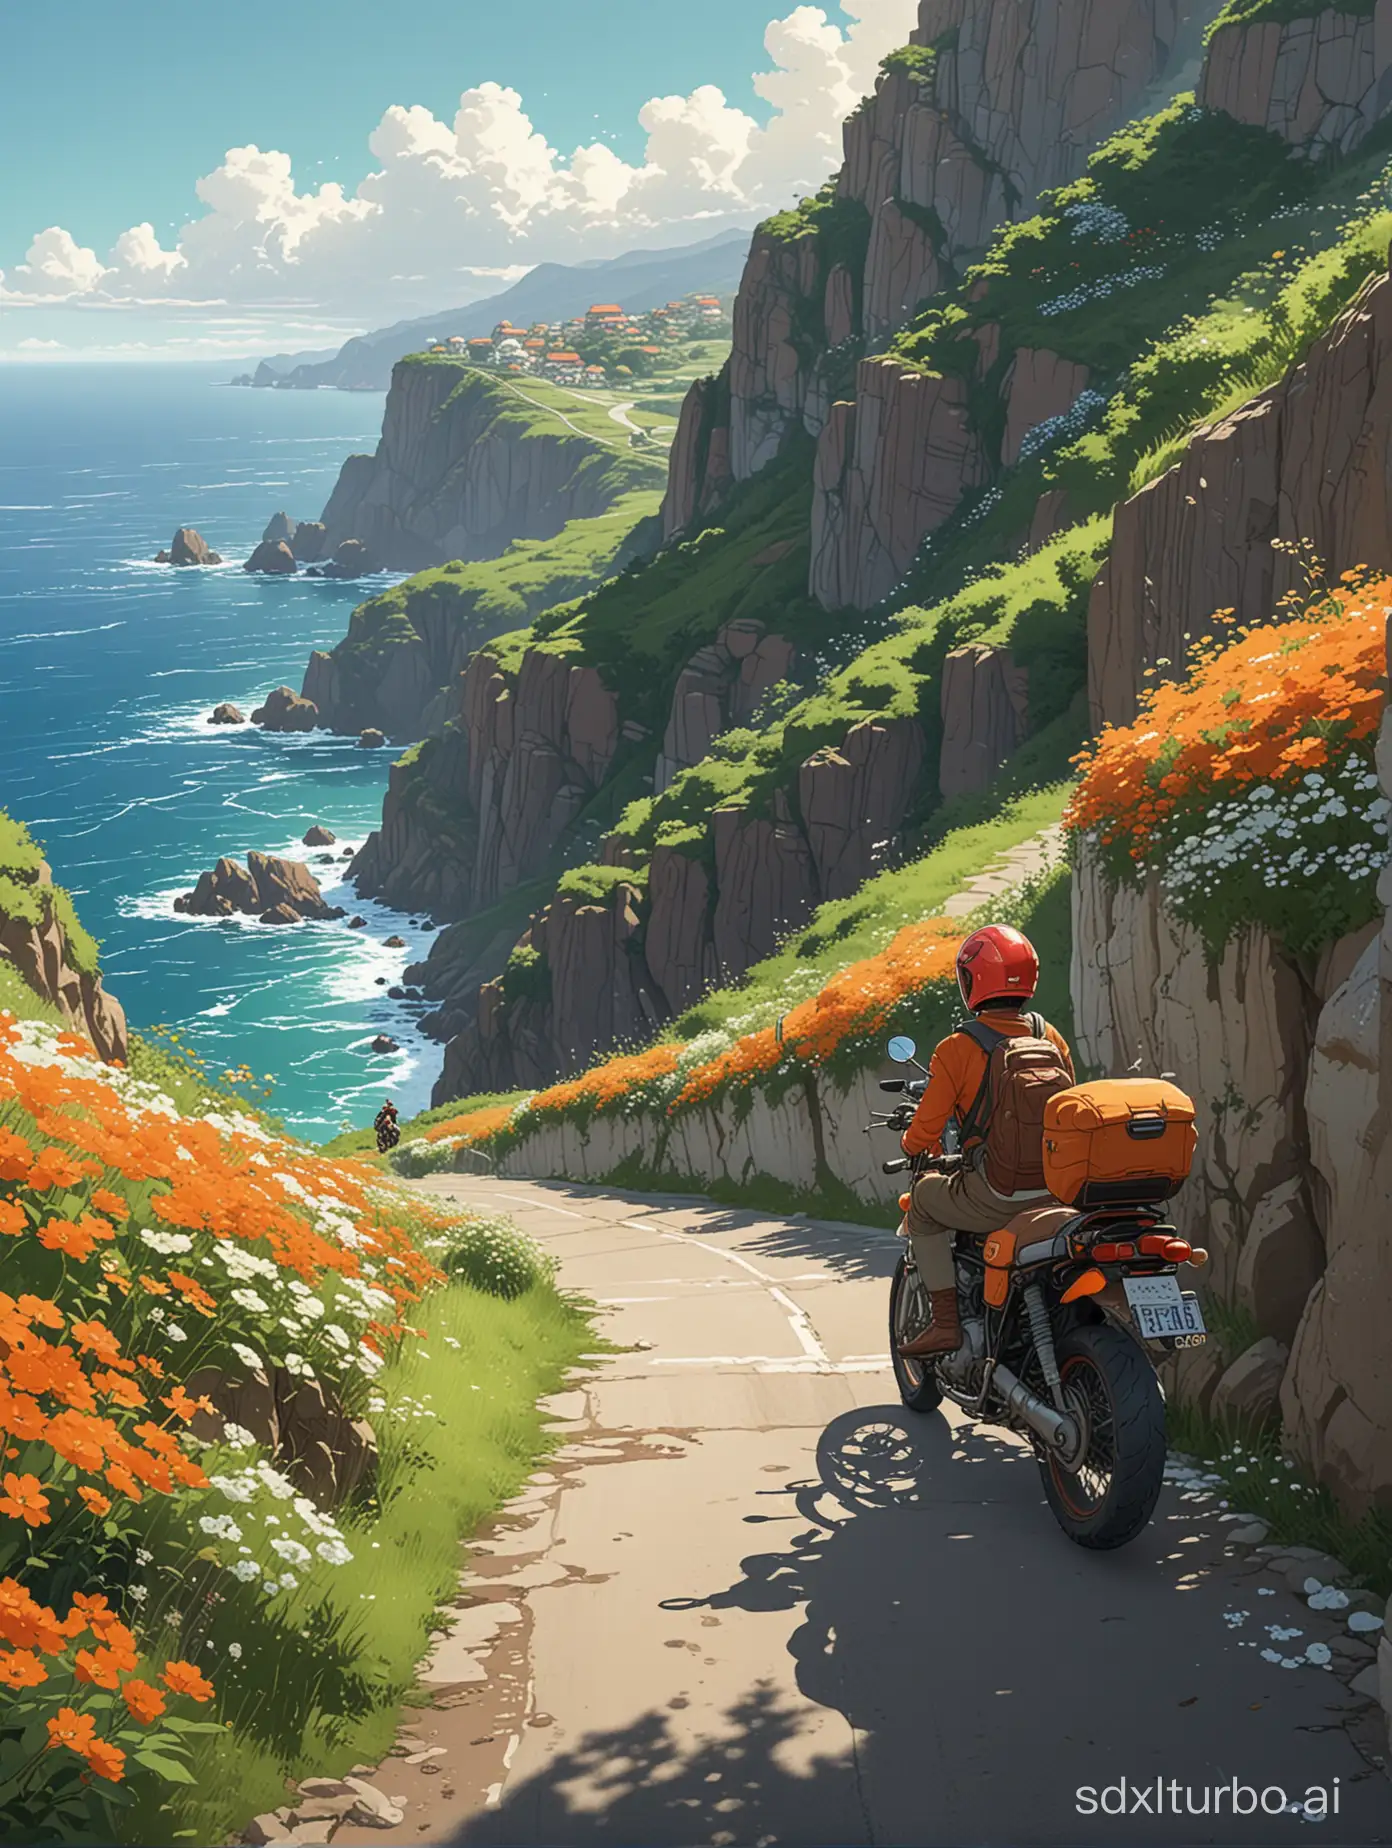 Boy-with-Orange-Helmet-on-Red-Motorcycle-Coastal-Adventure-in-Studio-Ghibli-Anime-Style